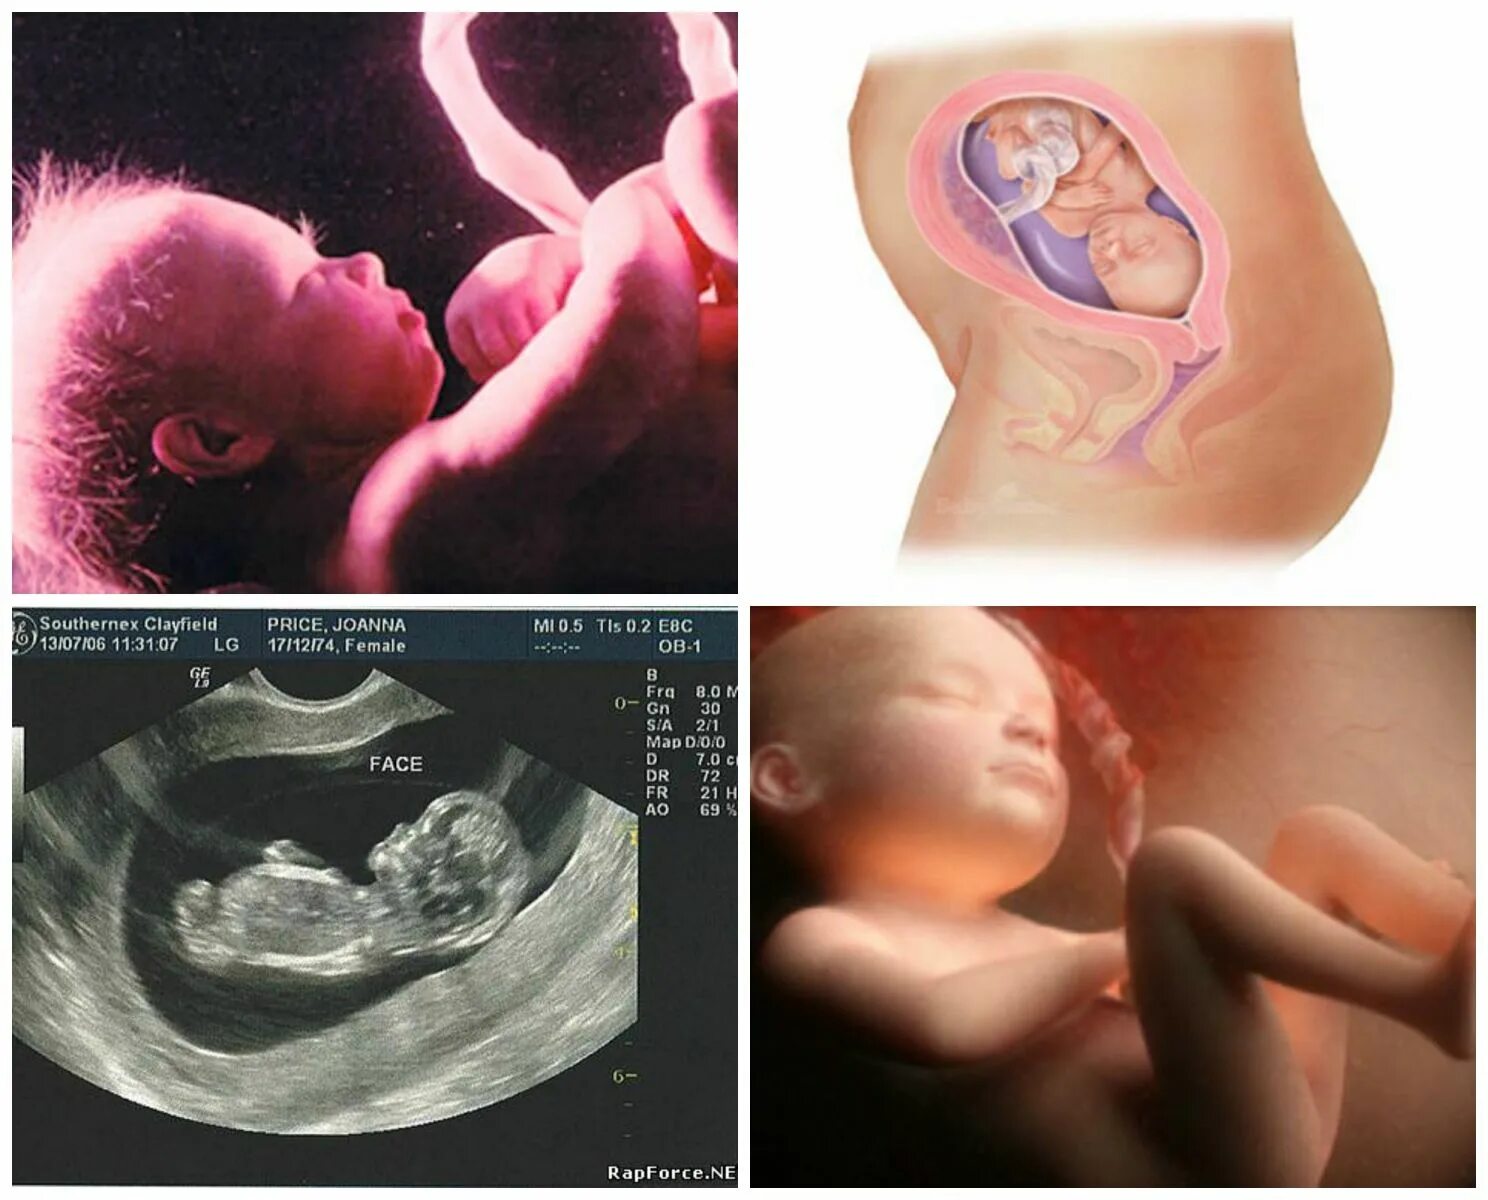 26 недель что происходит с малышом. 27 Неделя беременности фото плода. Ребенок на 26 неделе беременности УЗИ. 26 Неделя беременности фото плода. Беременность 26-27 недель фото плода.